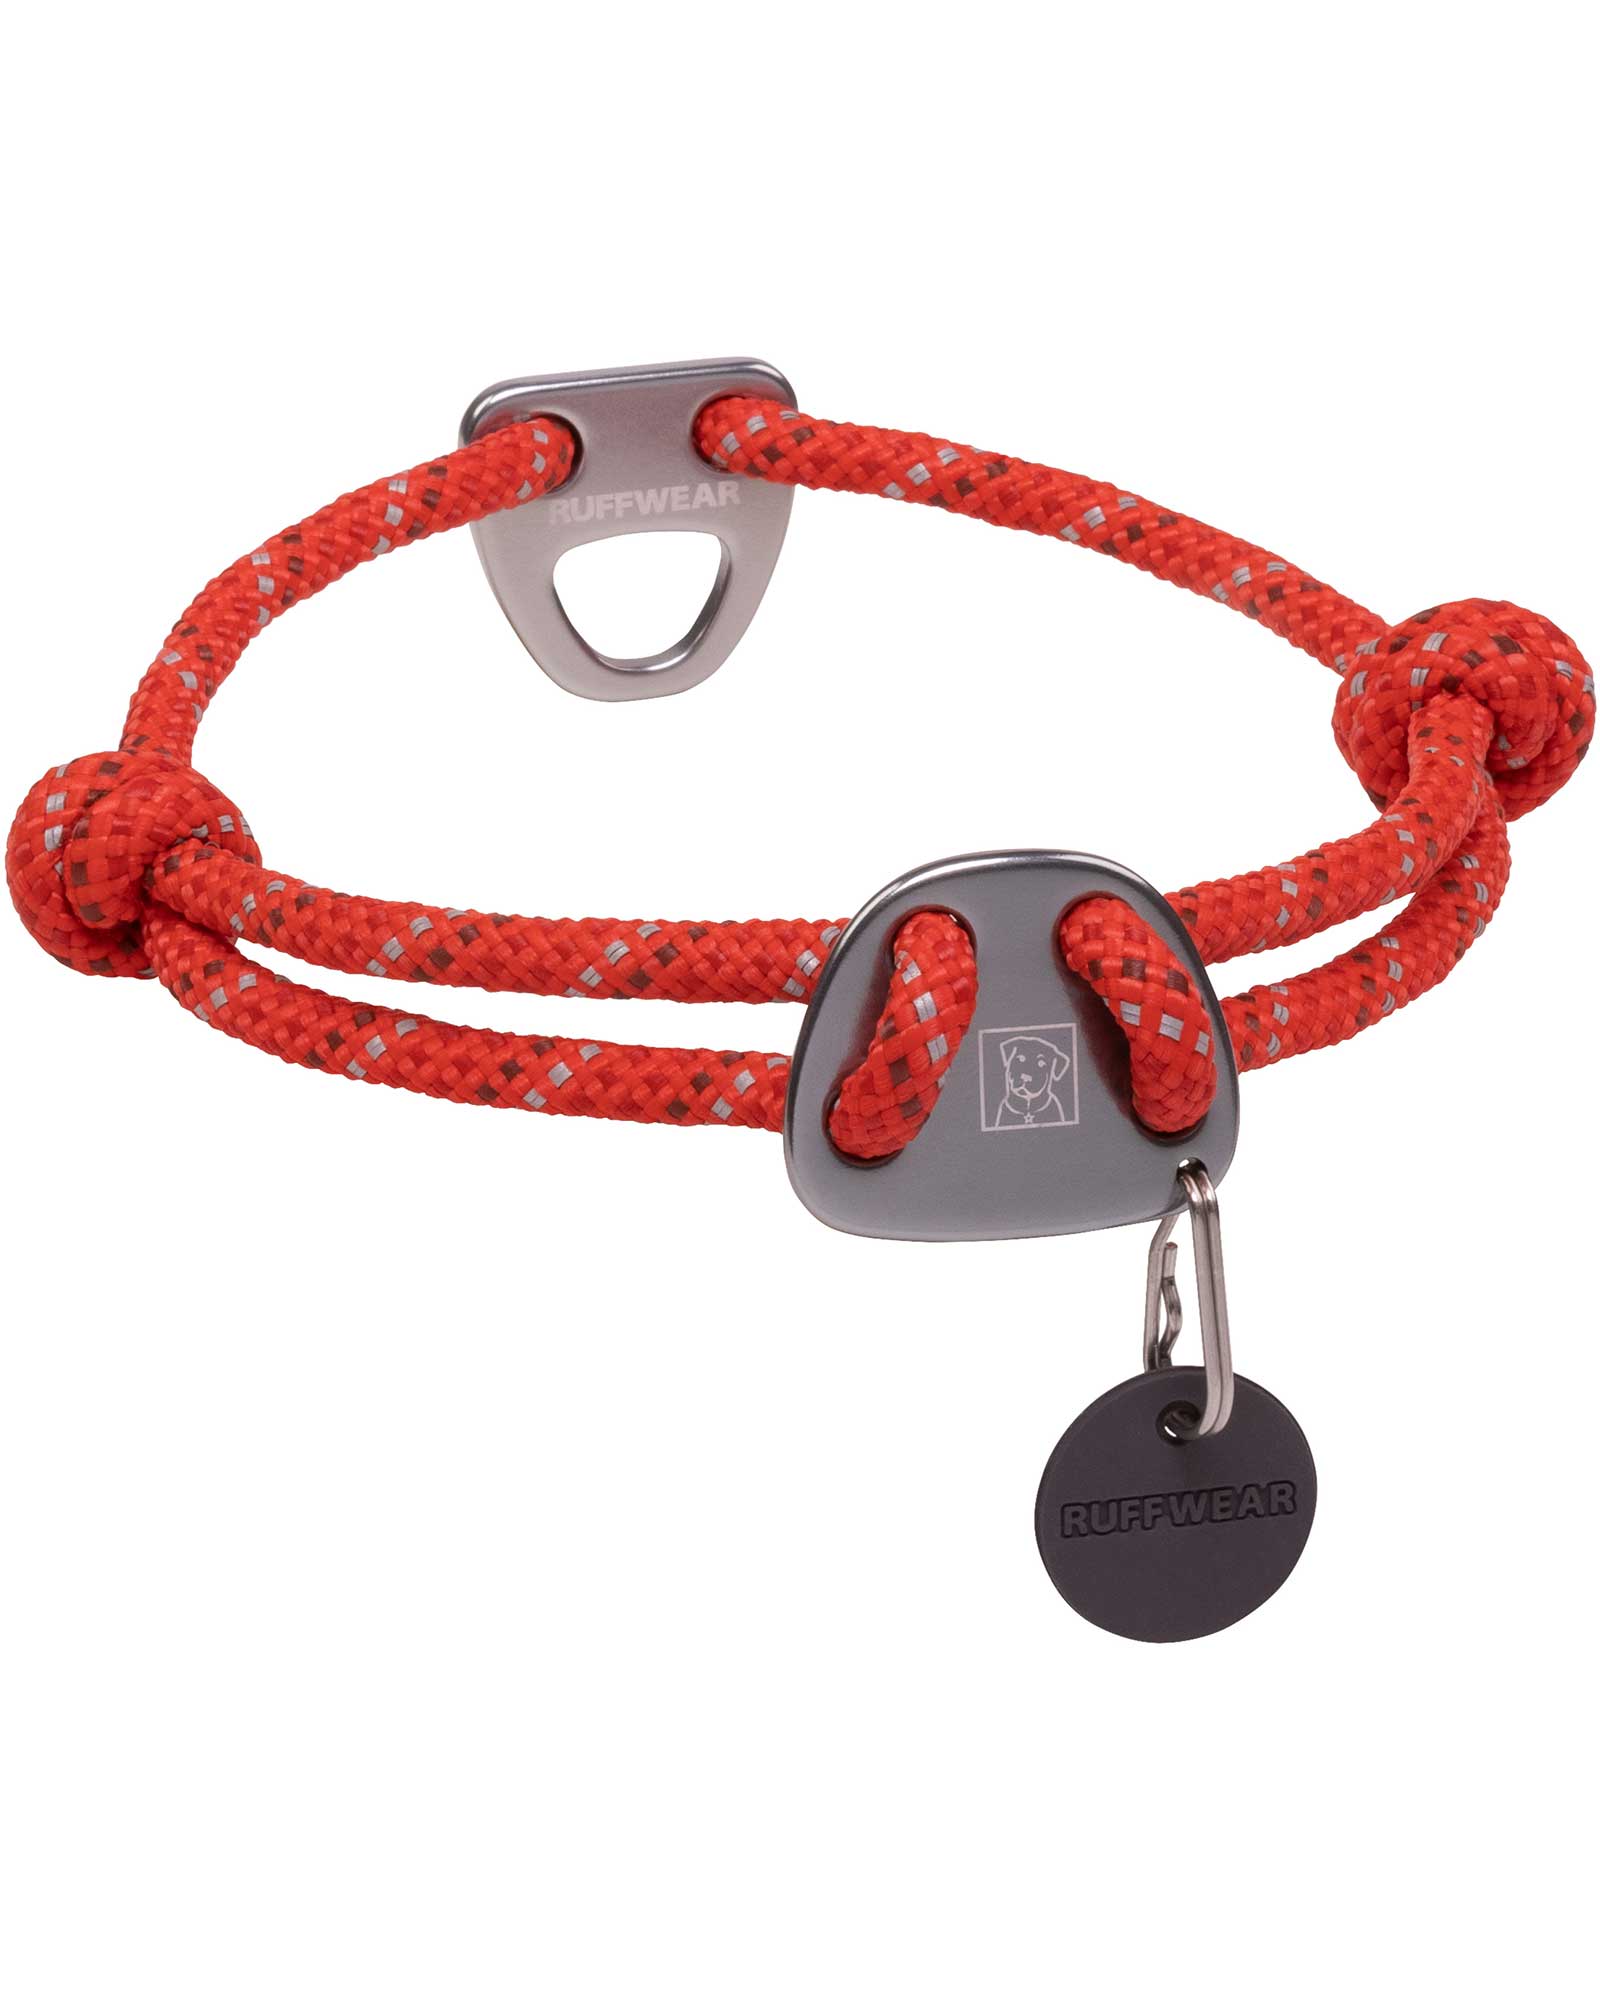 Ruffwear Knot a Collar - Red Sumac L